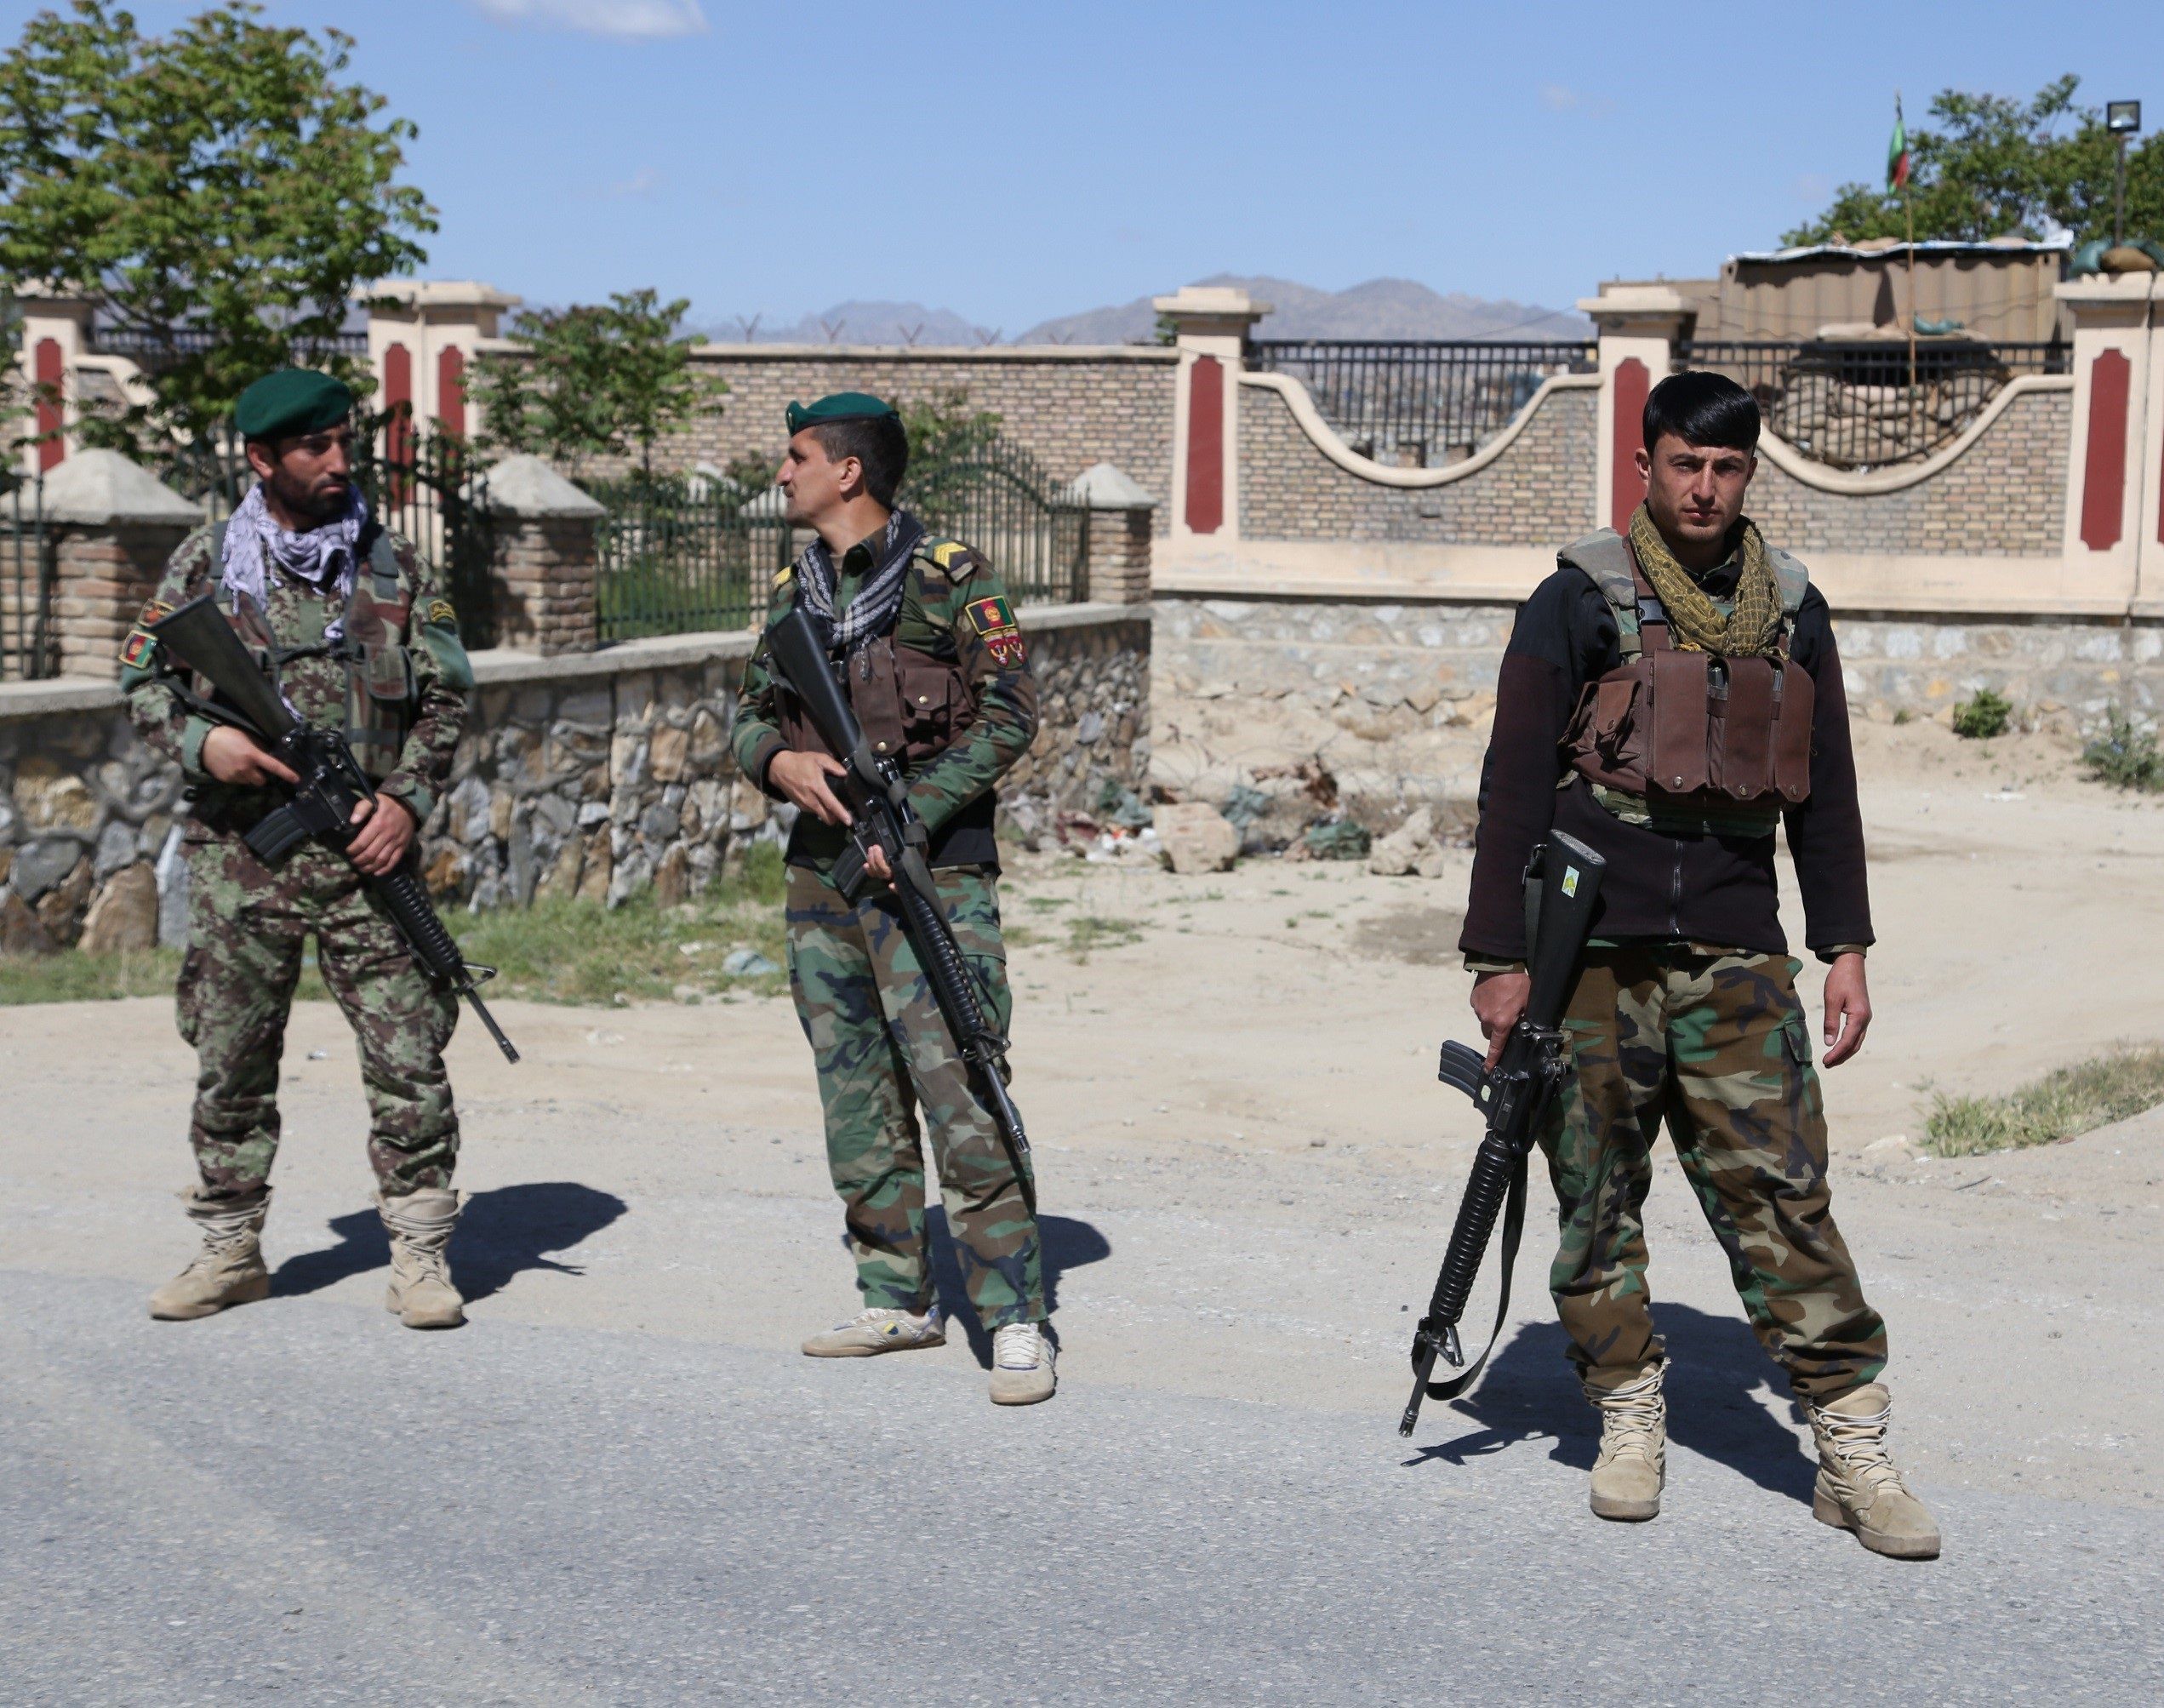 13/07/2020 Miembros de las fuerzas de seguridad afganas en Ghazni
POLITICA ASIA AFGANISTÁN INTERNACIONAL
SAYED MOMINZADAH / XINHUA NEWS / CONTACTOPHOTO
